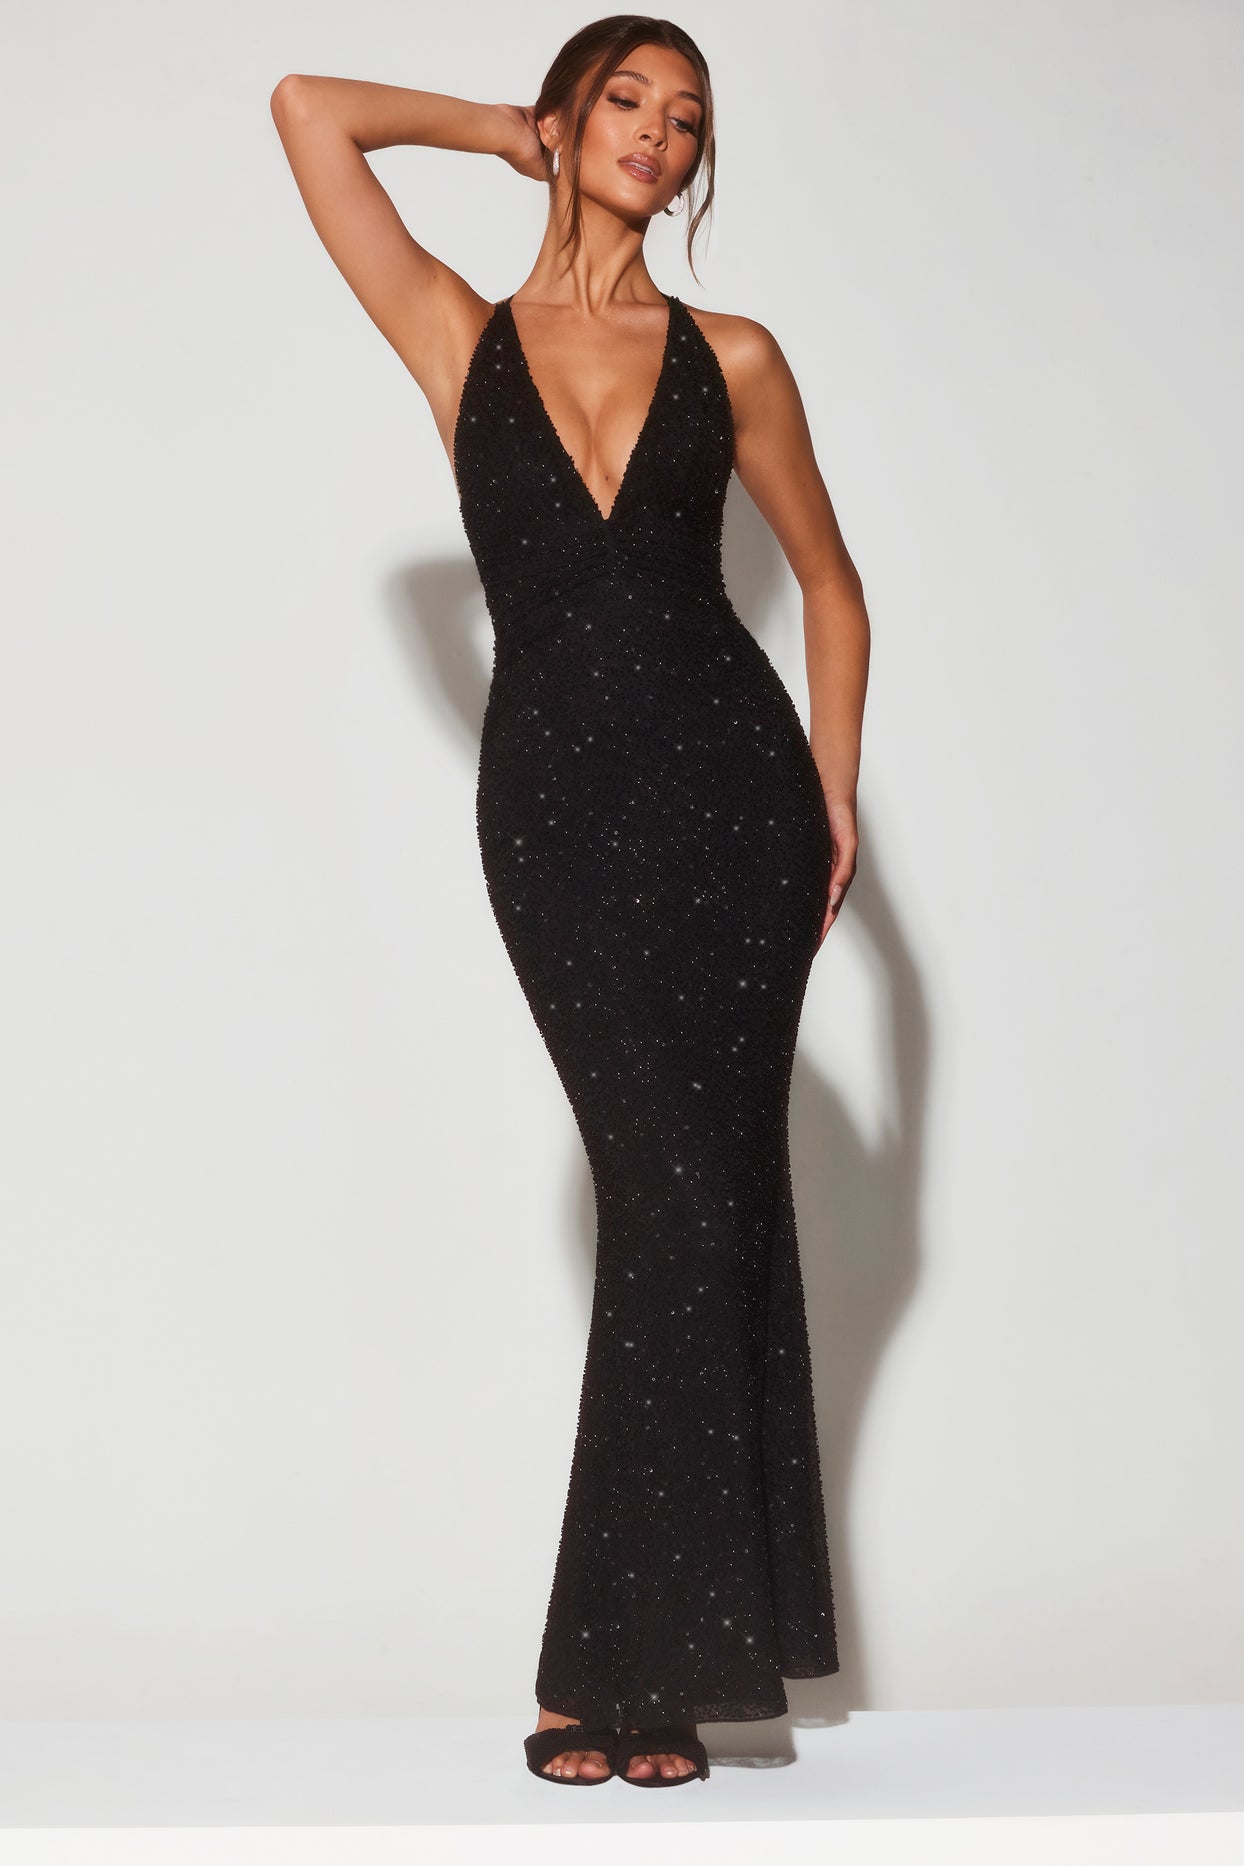 Ozdobiona suknia wieczorowa z głębokim dekoltem typu halter w kolorze czarnym